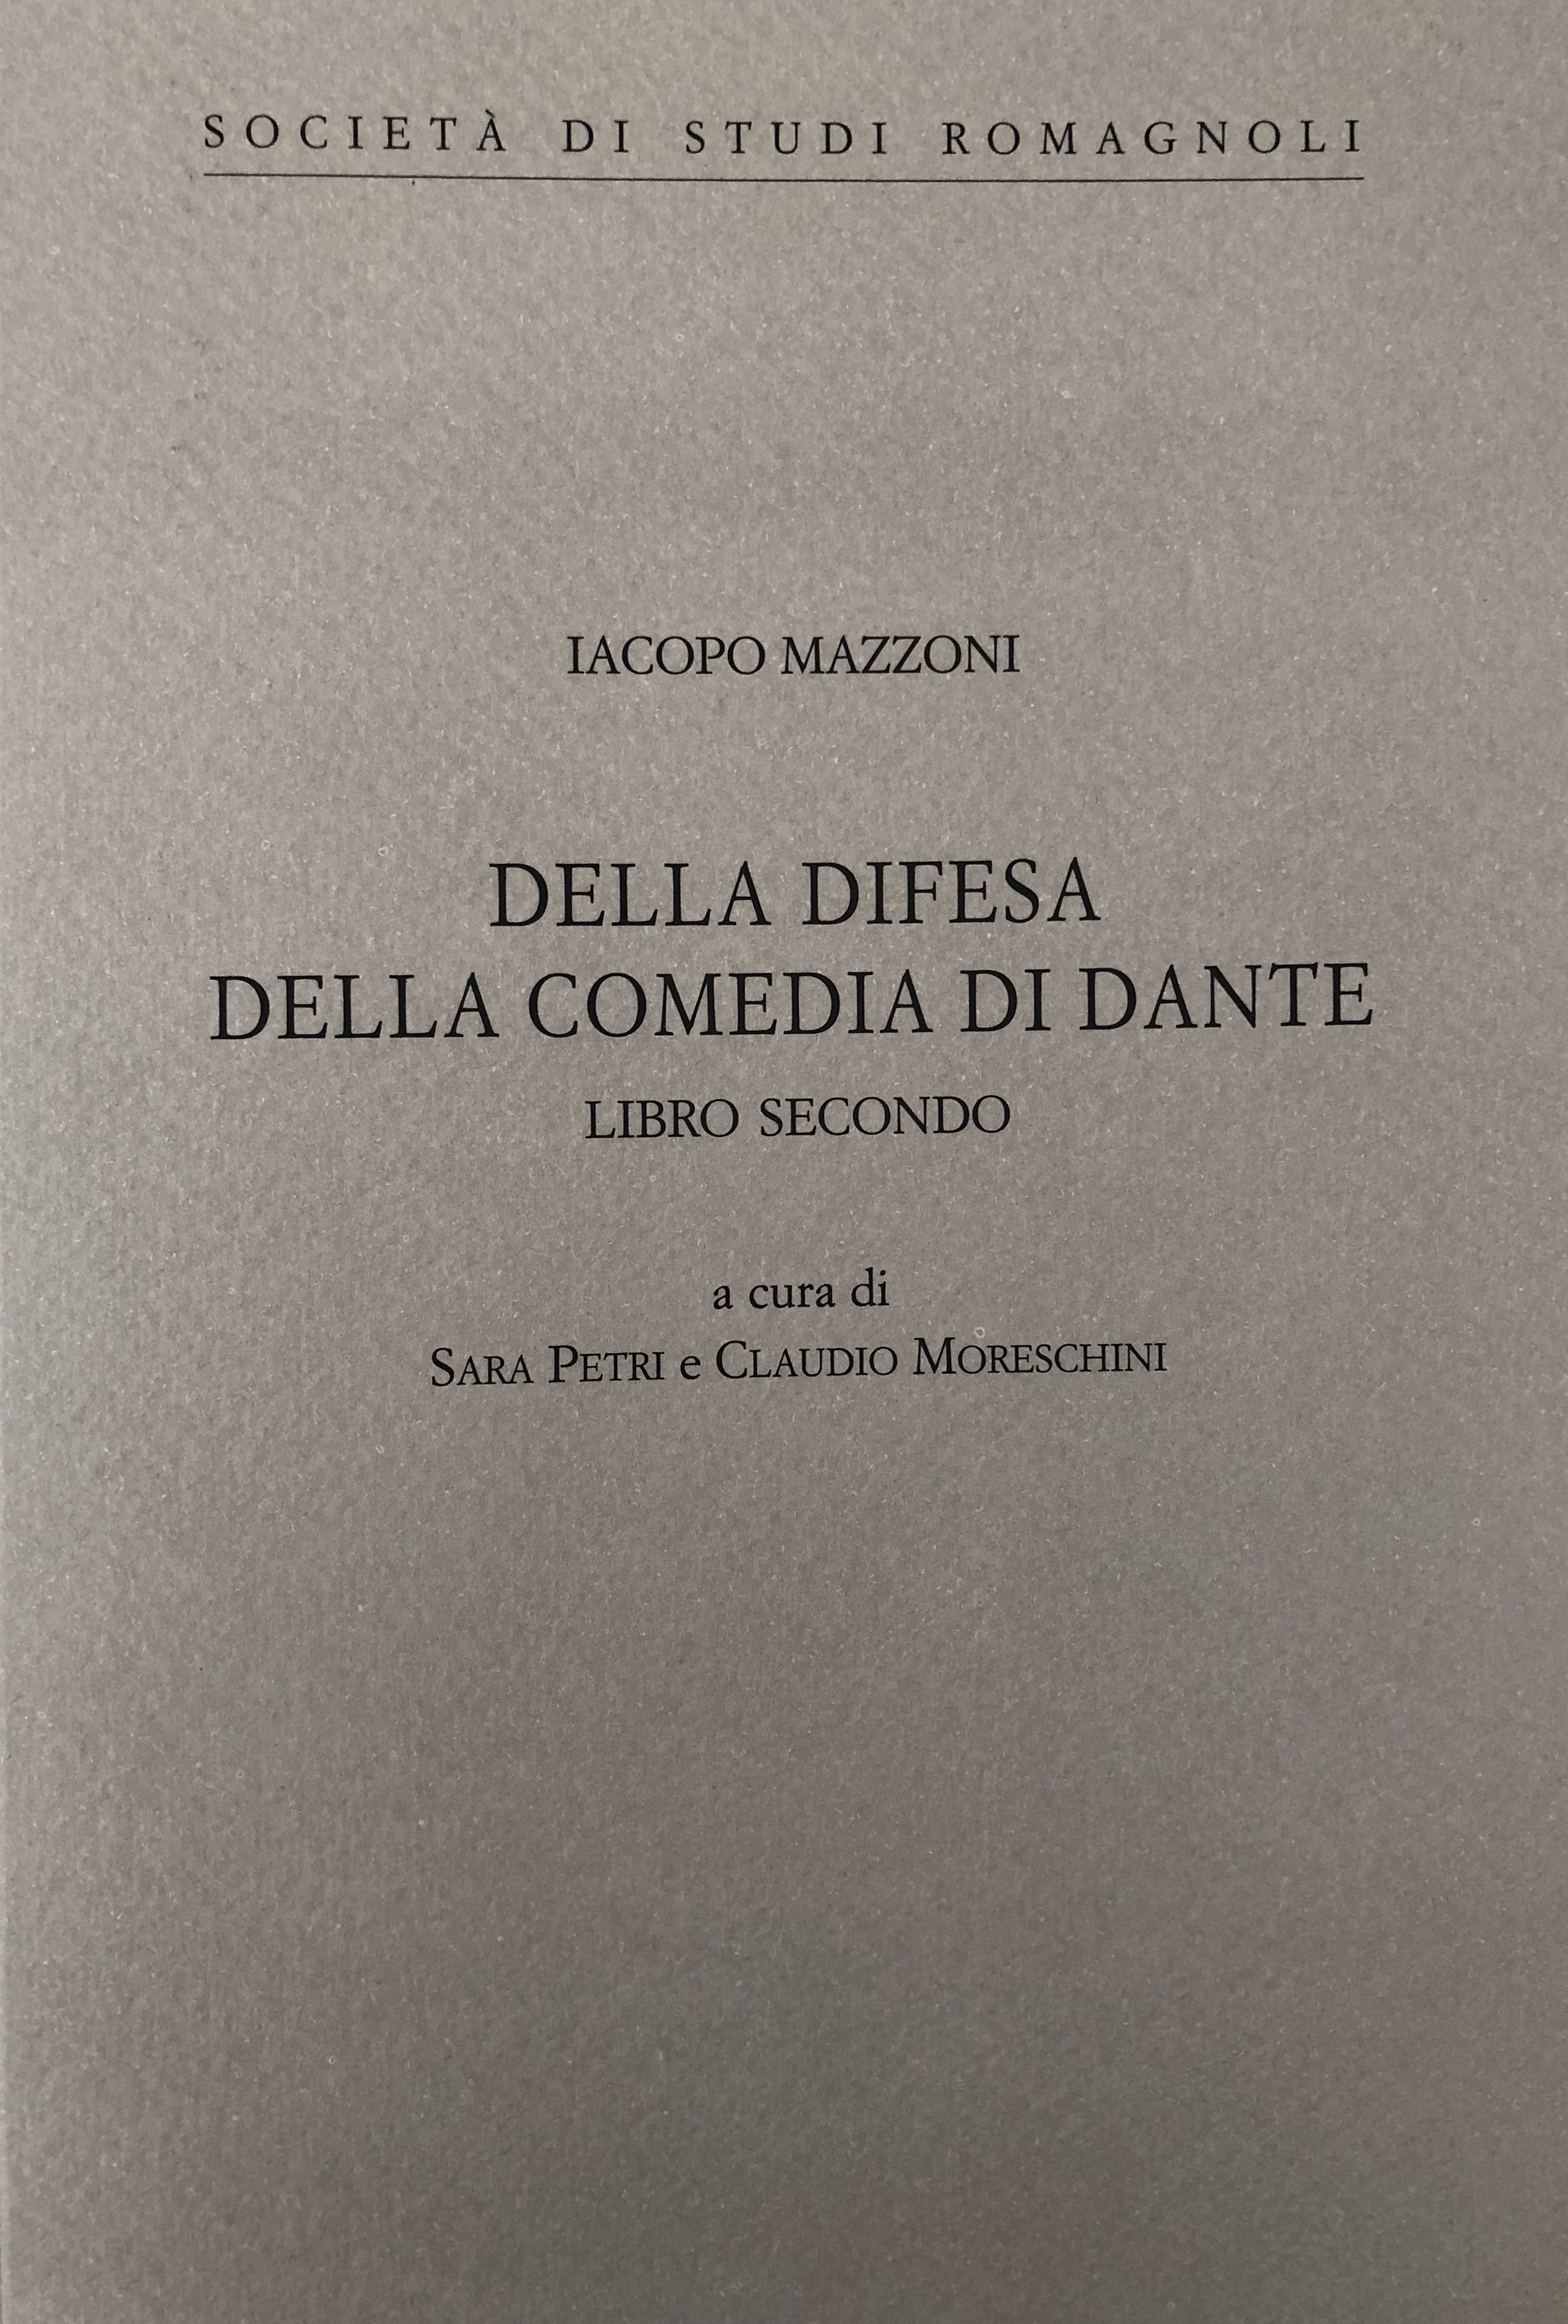 IACOPO MAZZONI, Della difesa della Comedia di Dante, Libro secondo